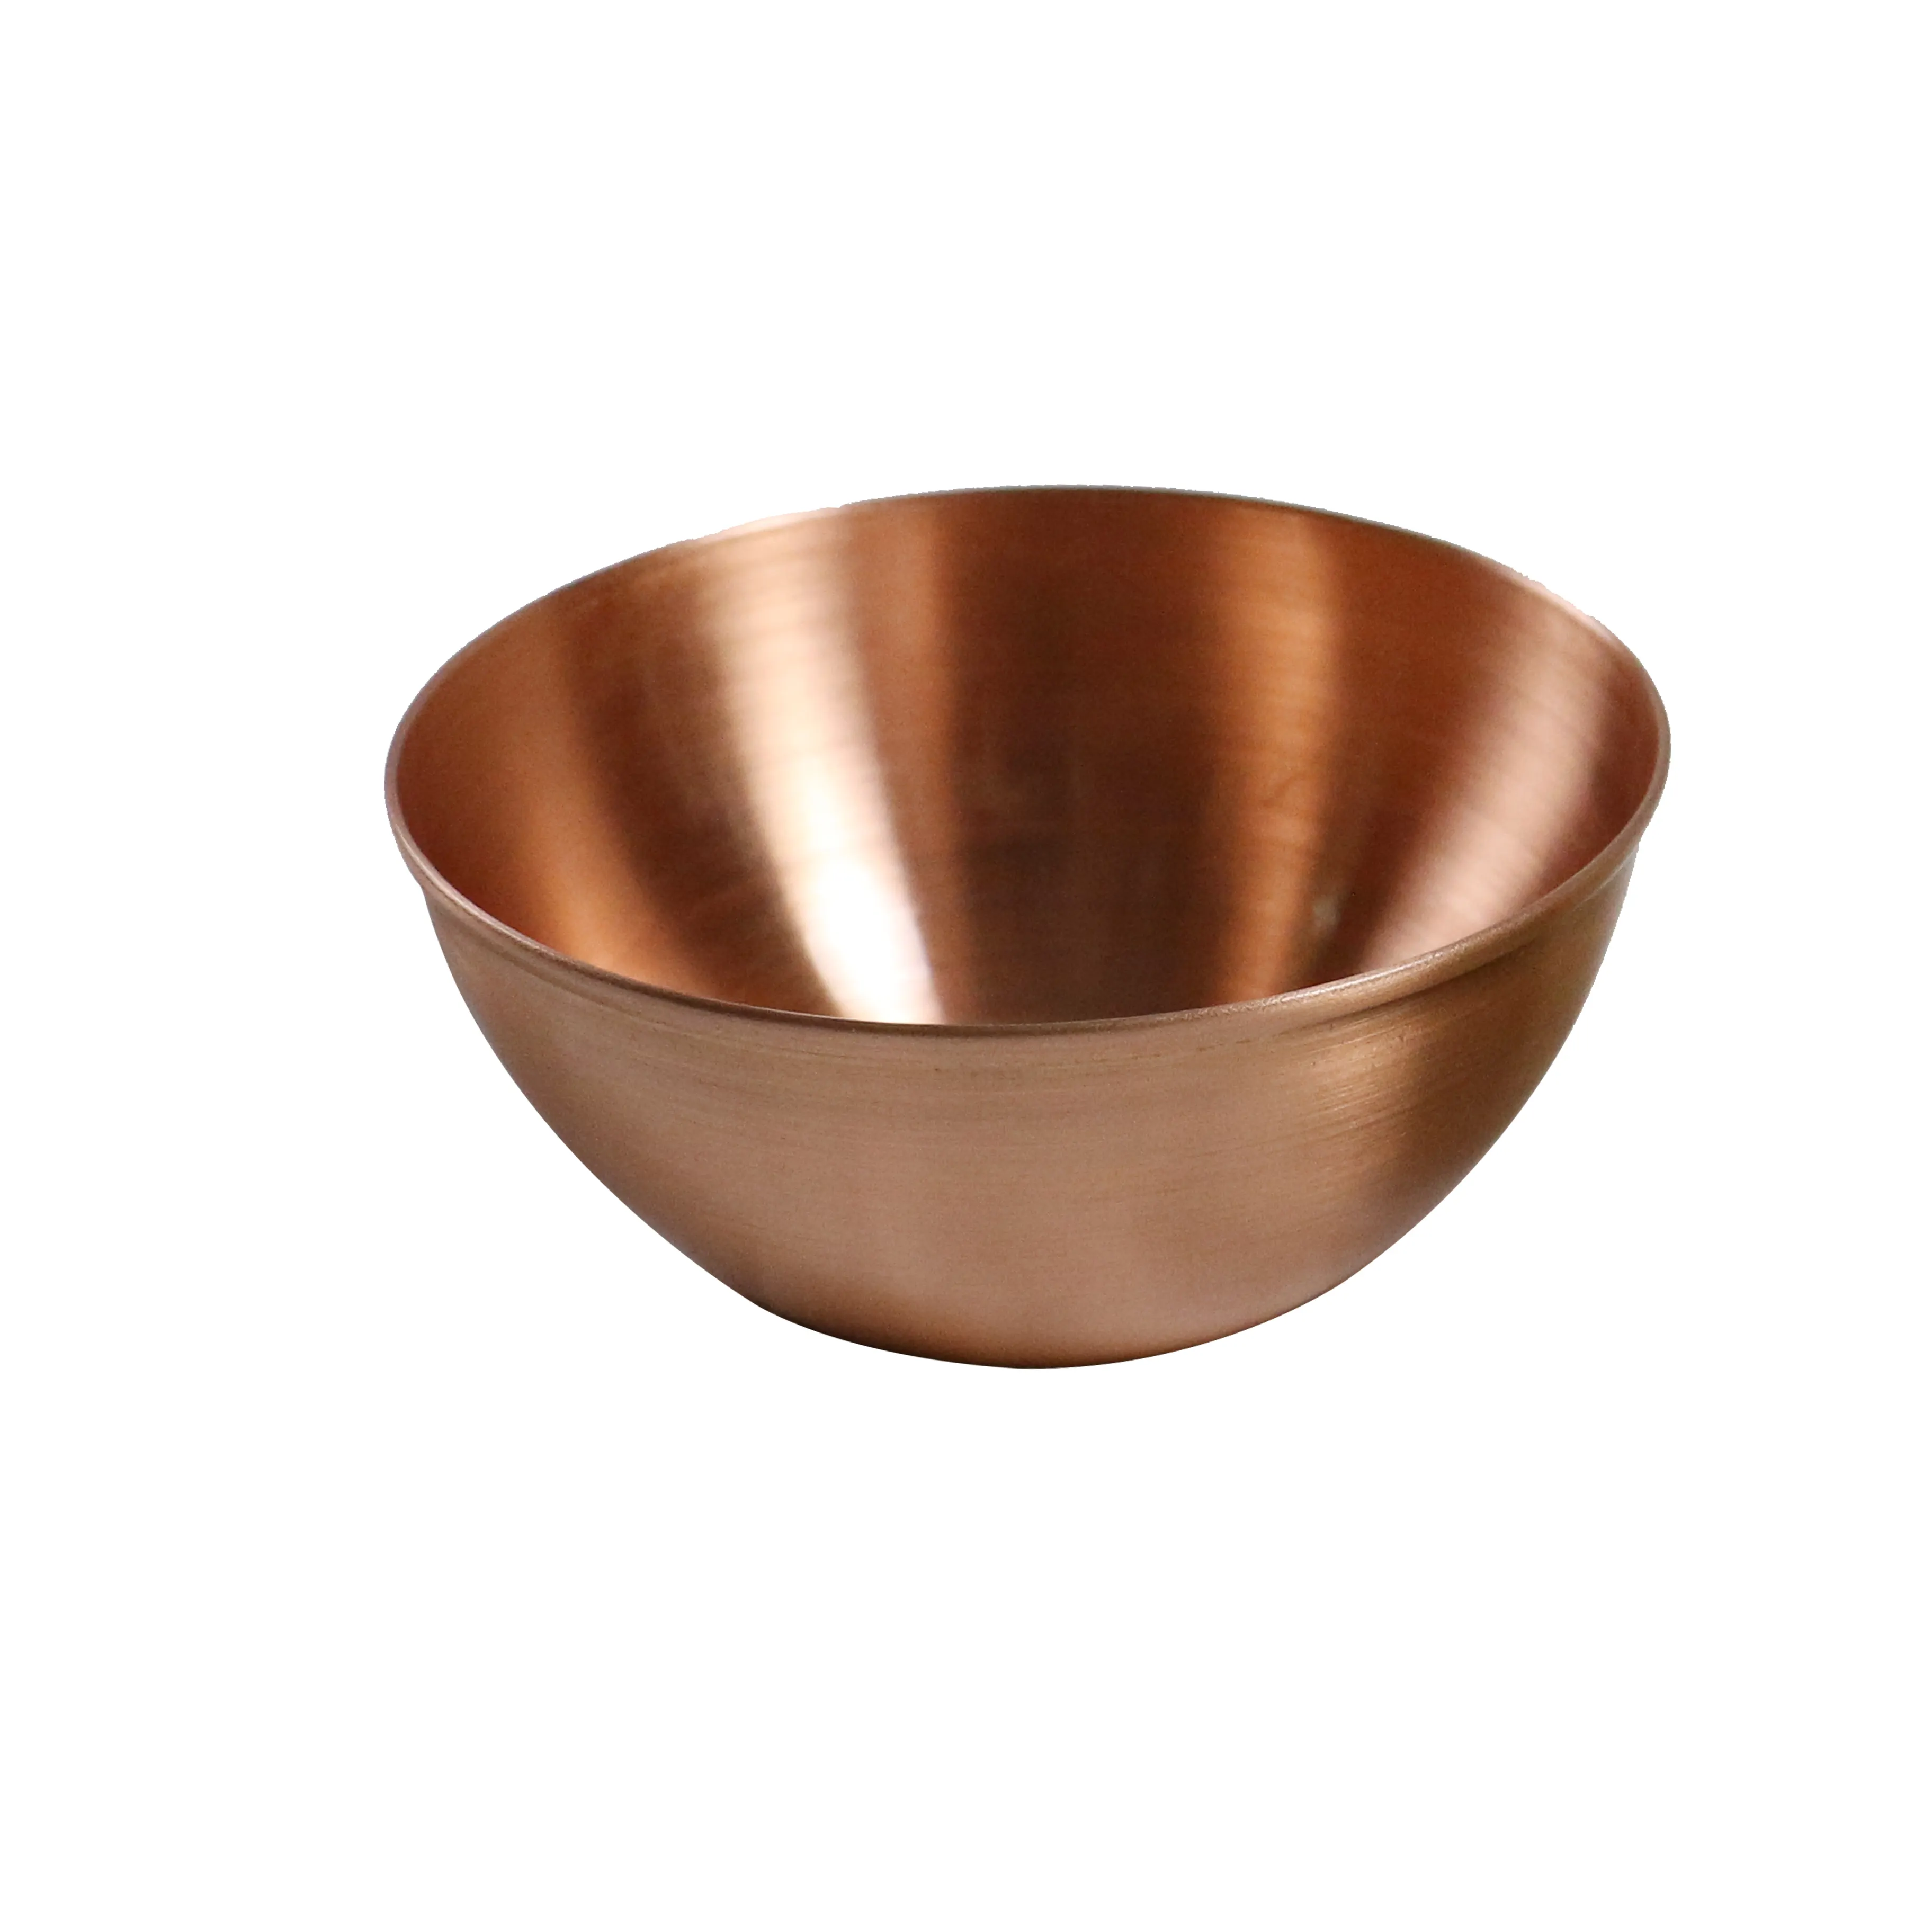 Oem Custom Spinning Onderdelen Plaatwerk Vervaardigd Diensten Fabriek Decoratieve Marmeren Fruit Bowls Gesponnen Antiek Messing Bowls